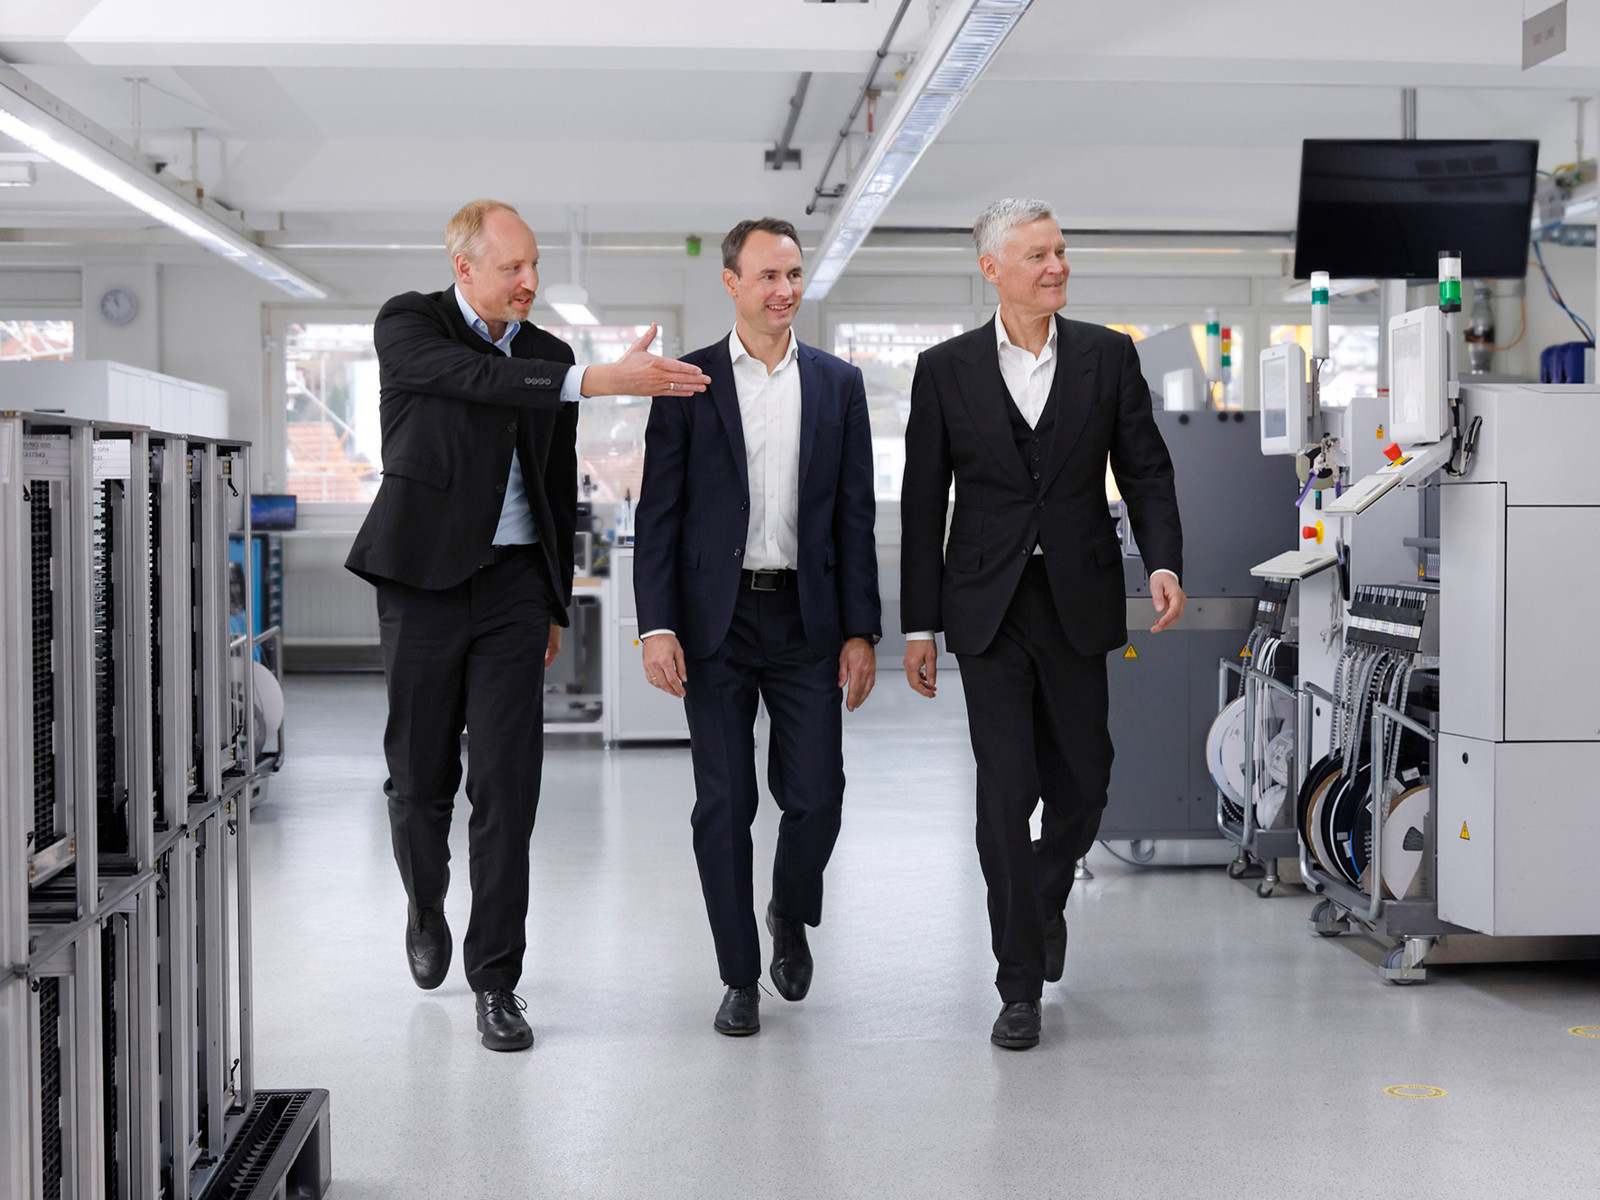 Neues Führungsteam: Die drei Geschäftsführer Christoph Weber, Jochen Cura und Peter Strobel (v. l.) übernehmen die unternehmerische Verantwortung bei Siedle.